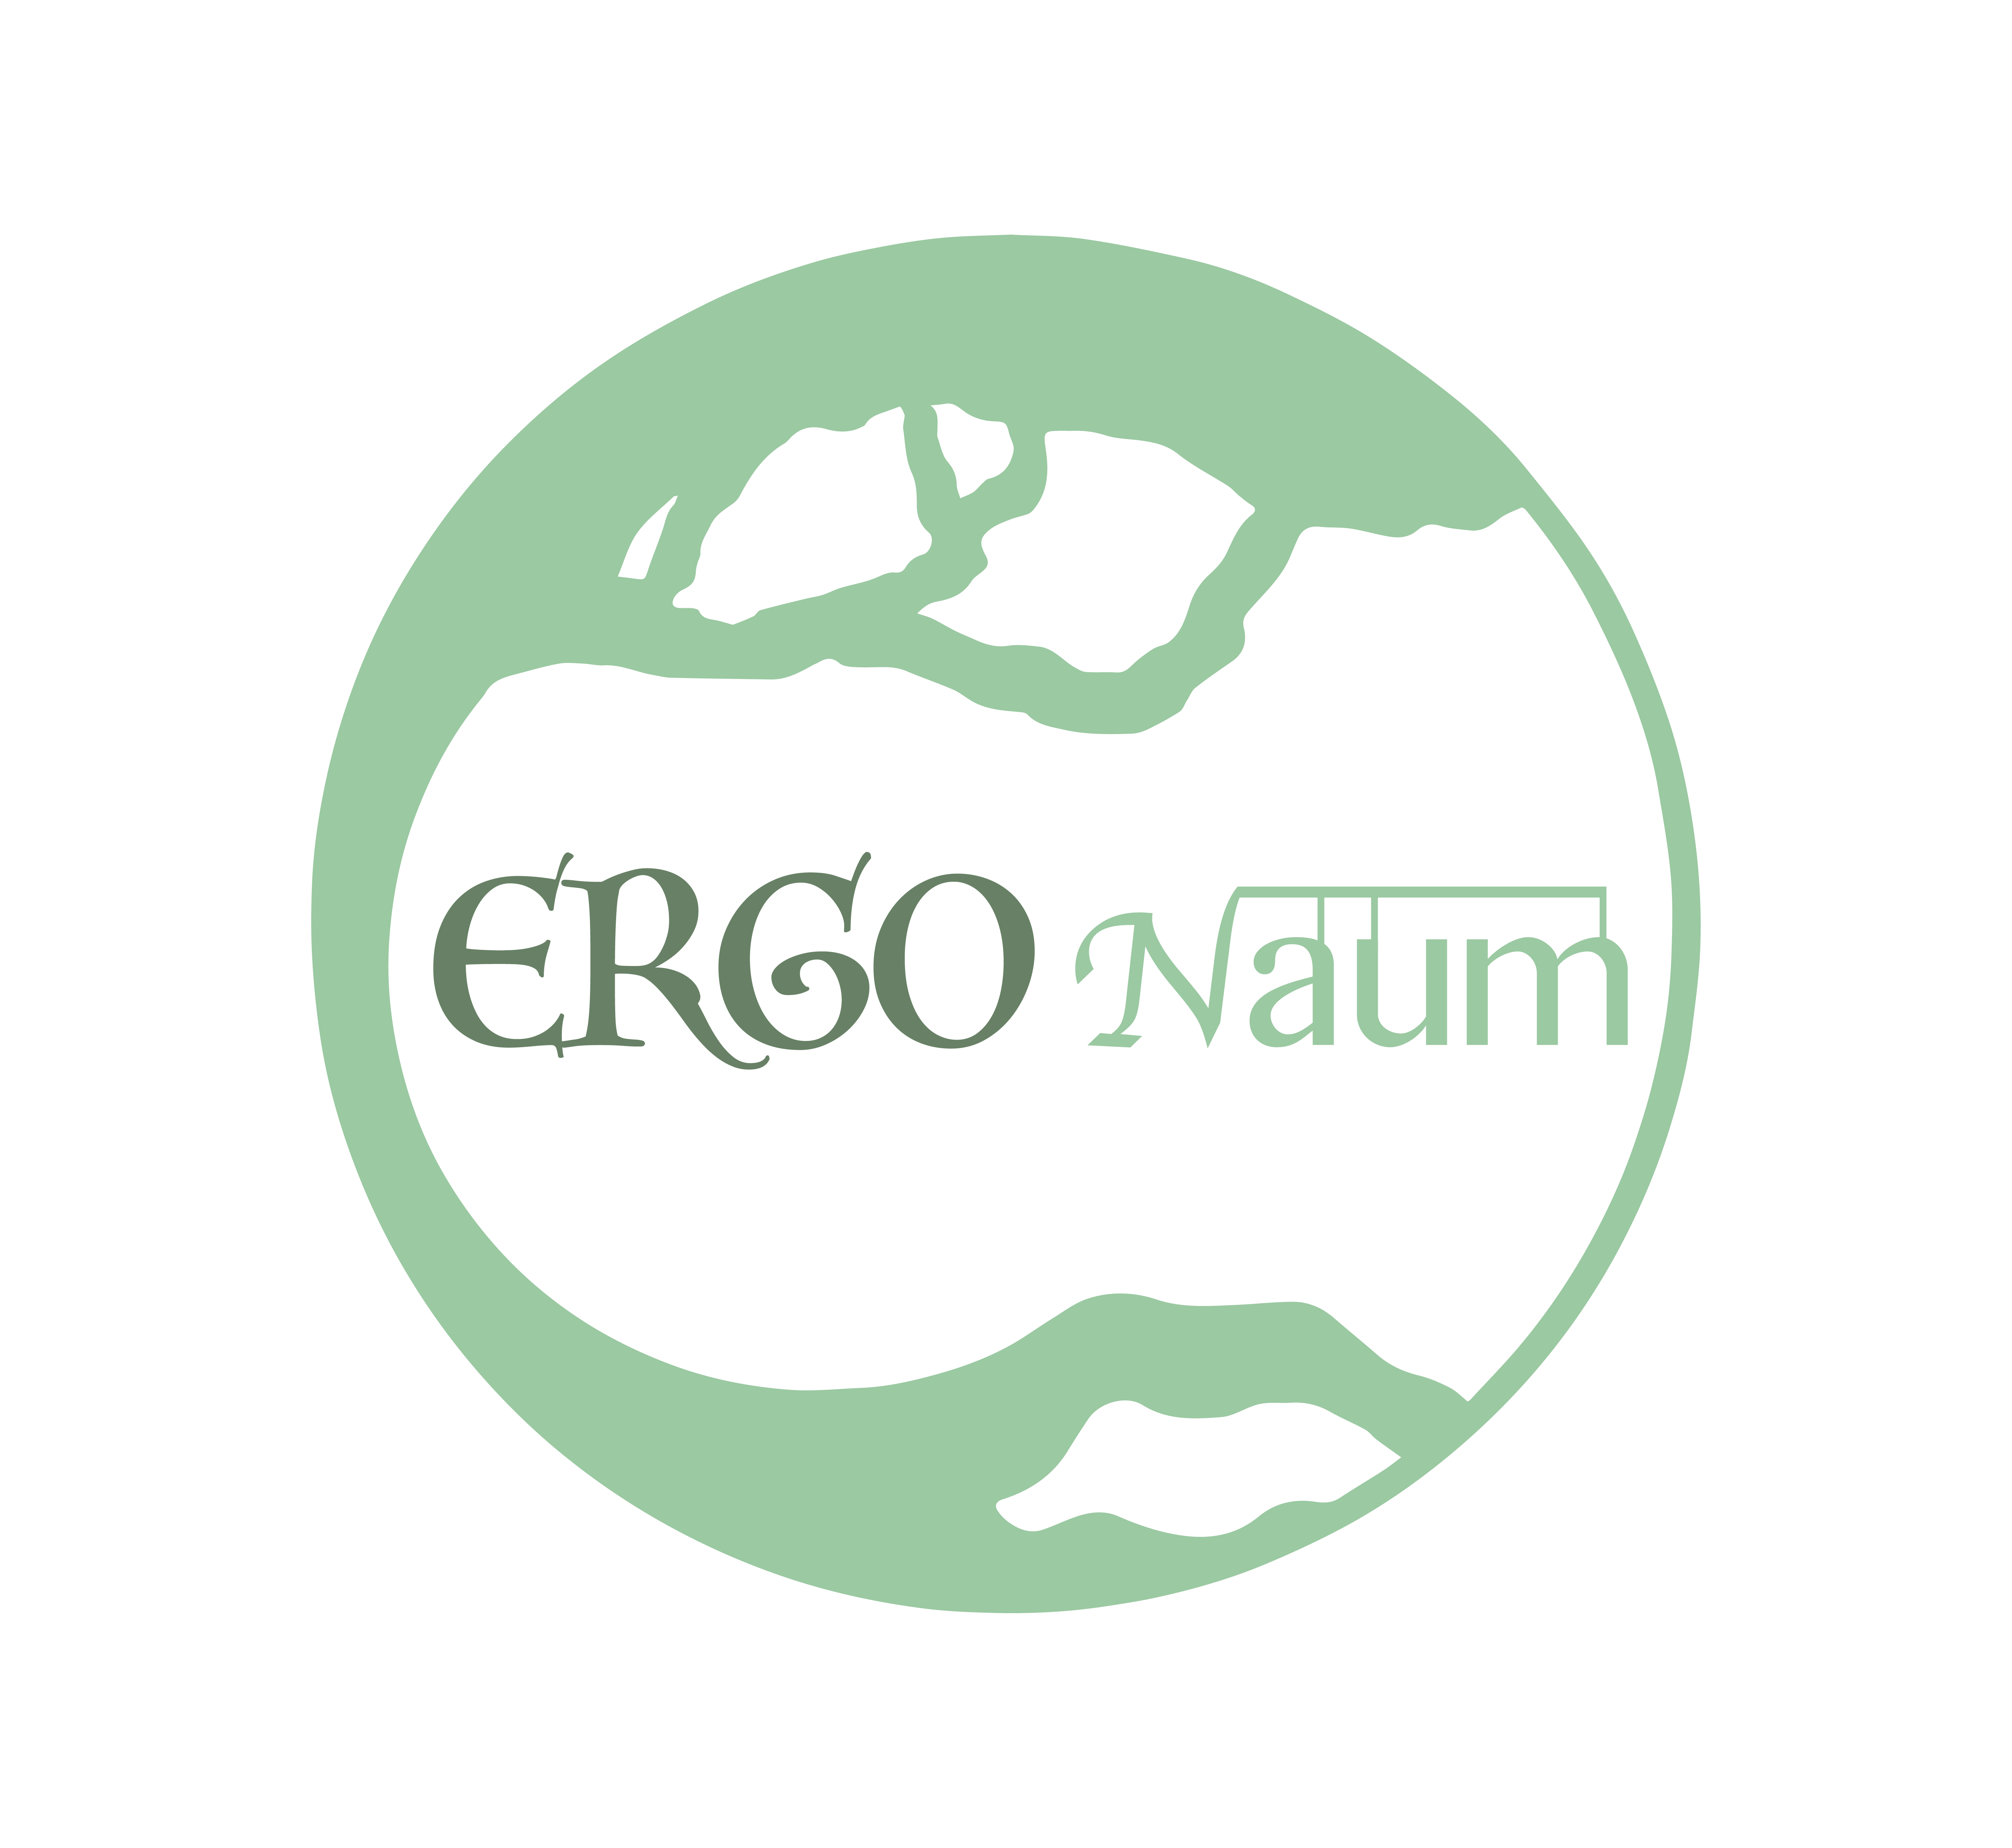 Ergonaum